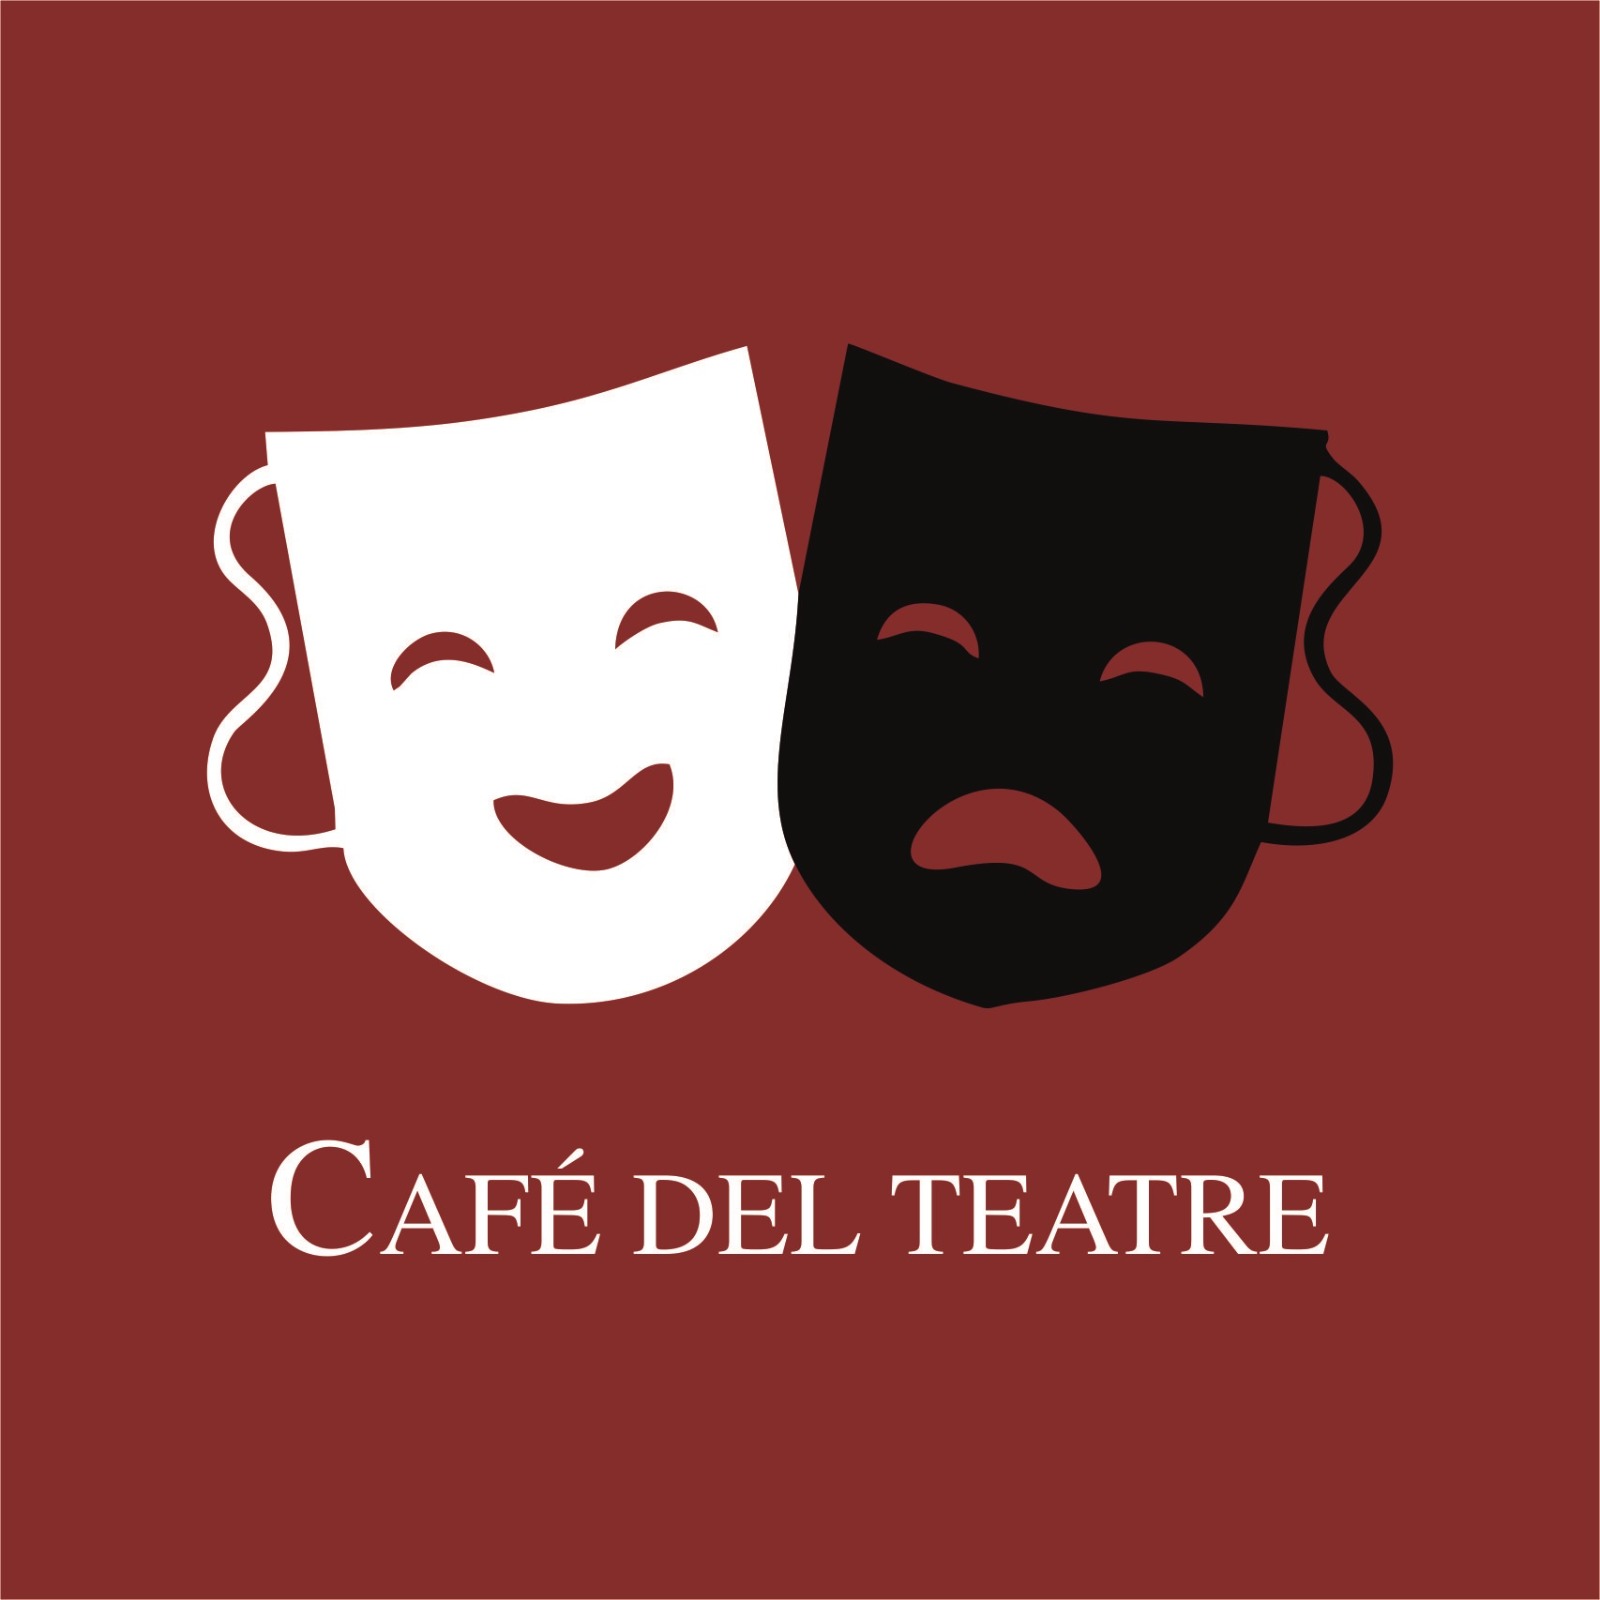 Café del teatre